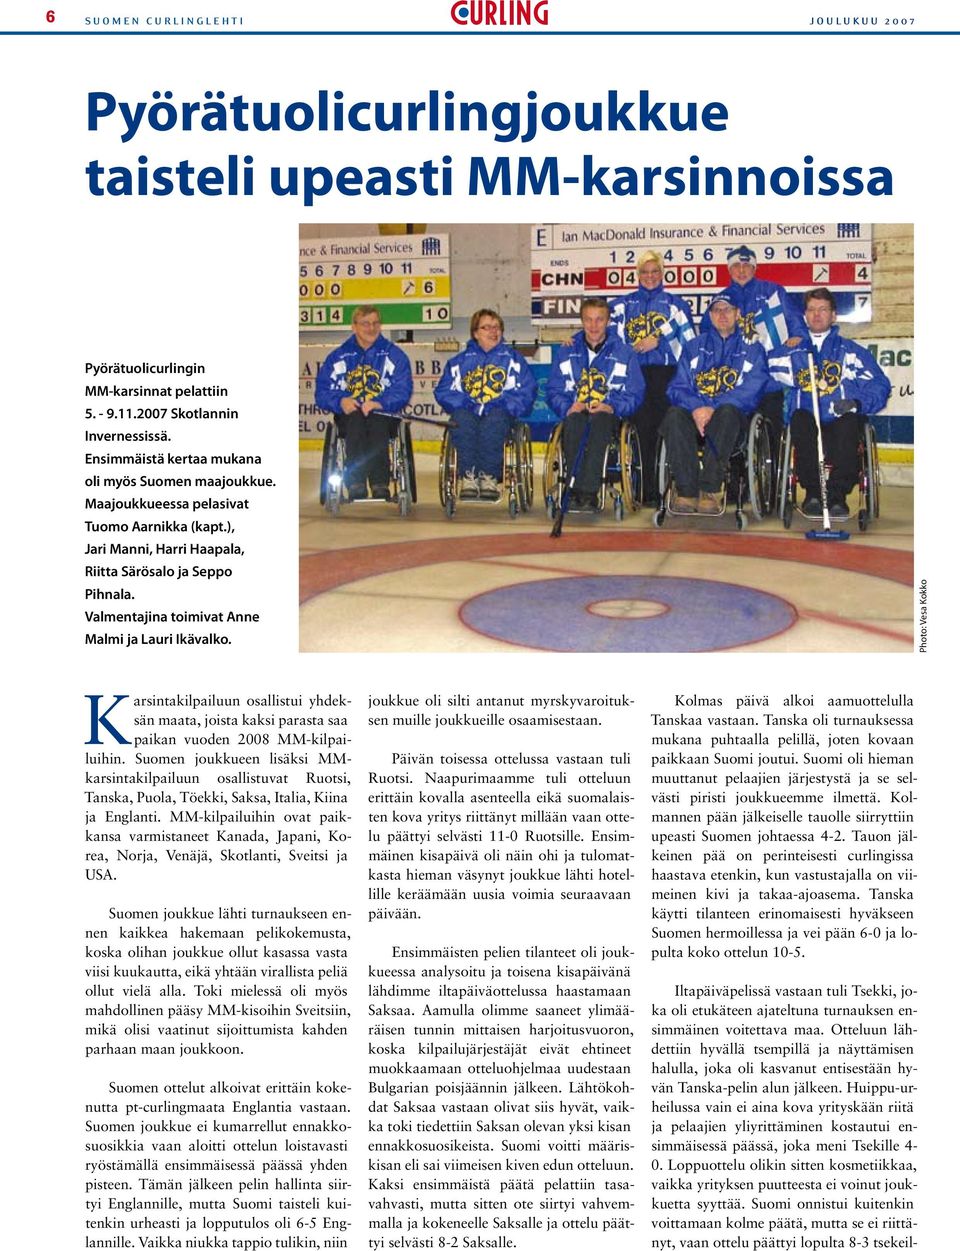 Valmentajina toimivat Anne Malmi ja Lauri Ikävalko. Photo: Vesa Kokko Karsintakilpailuun osallistui yhdeksän maata, joista kaksi parasta saa paikan vuoden 2008 MM-kilpailuihin.